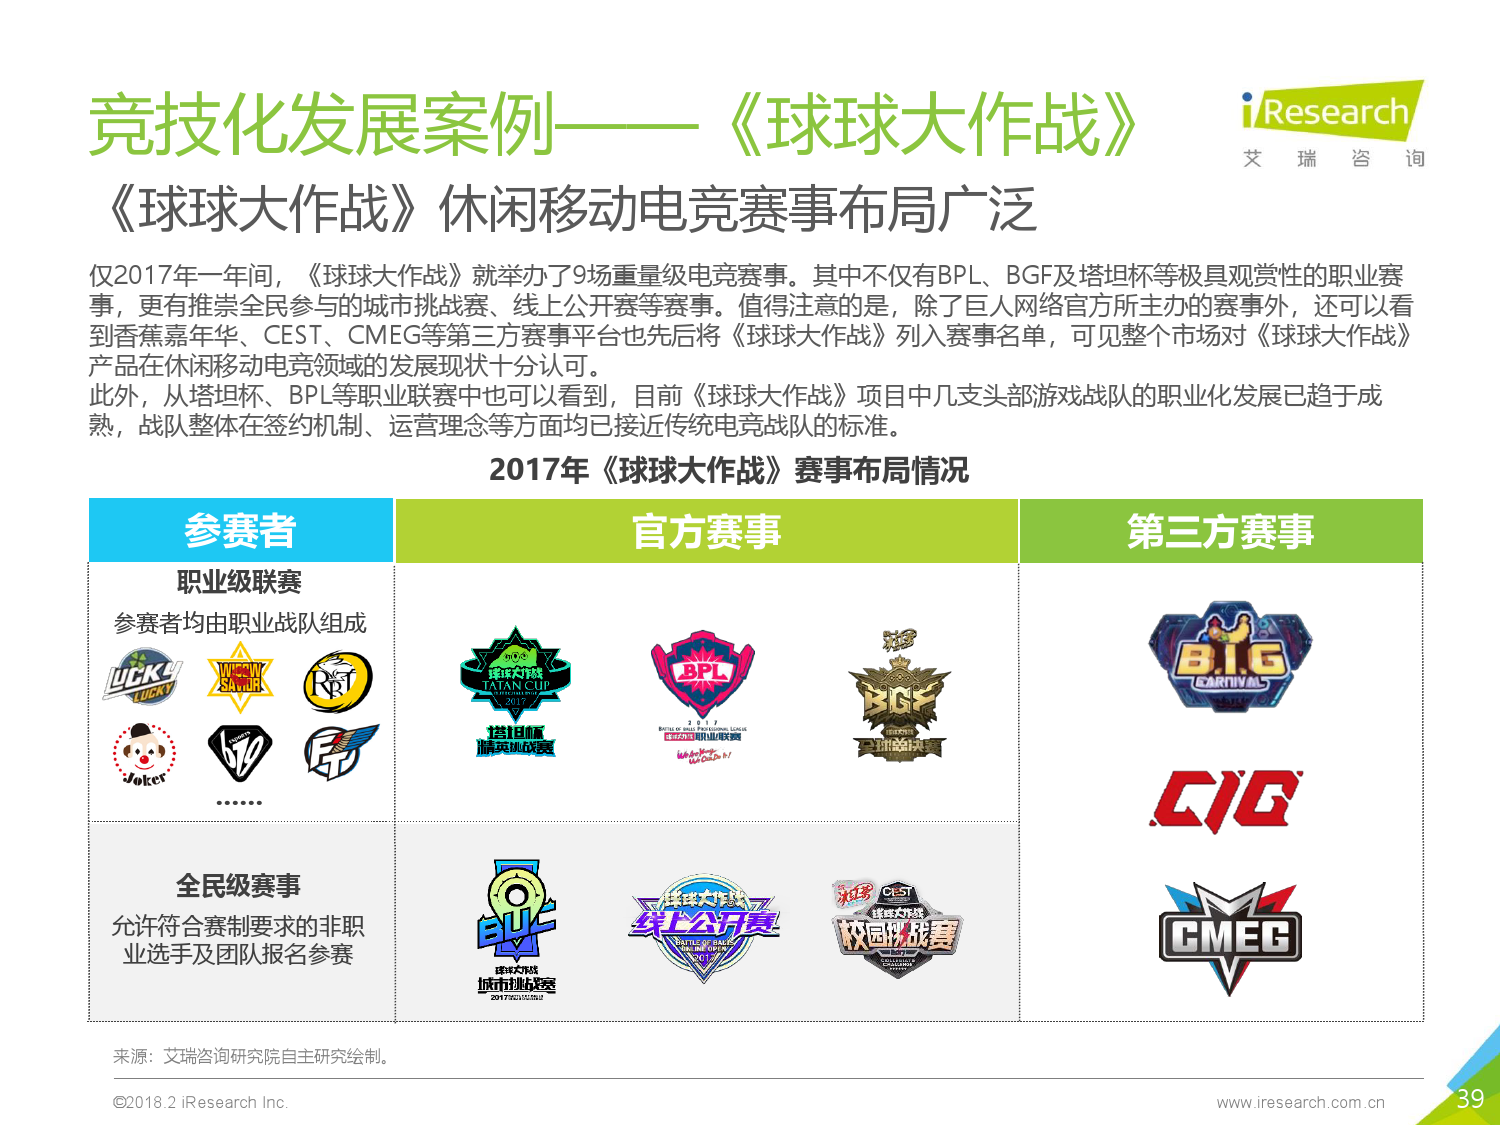 2018年中国休闲移动游戏行业报告_000039.png